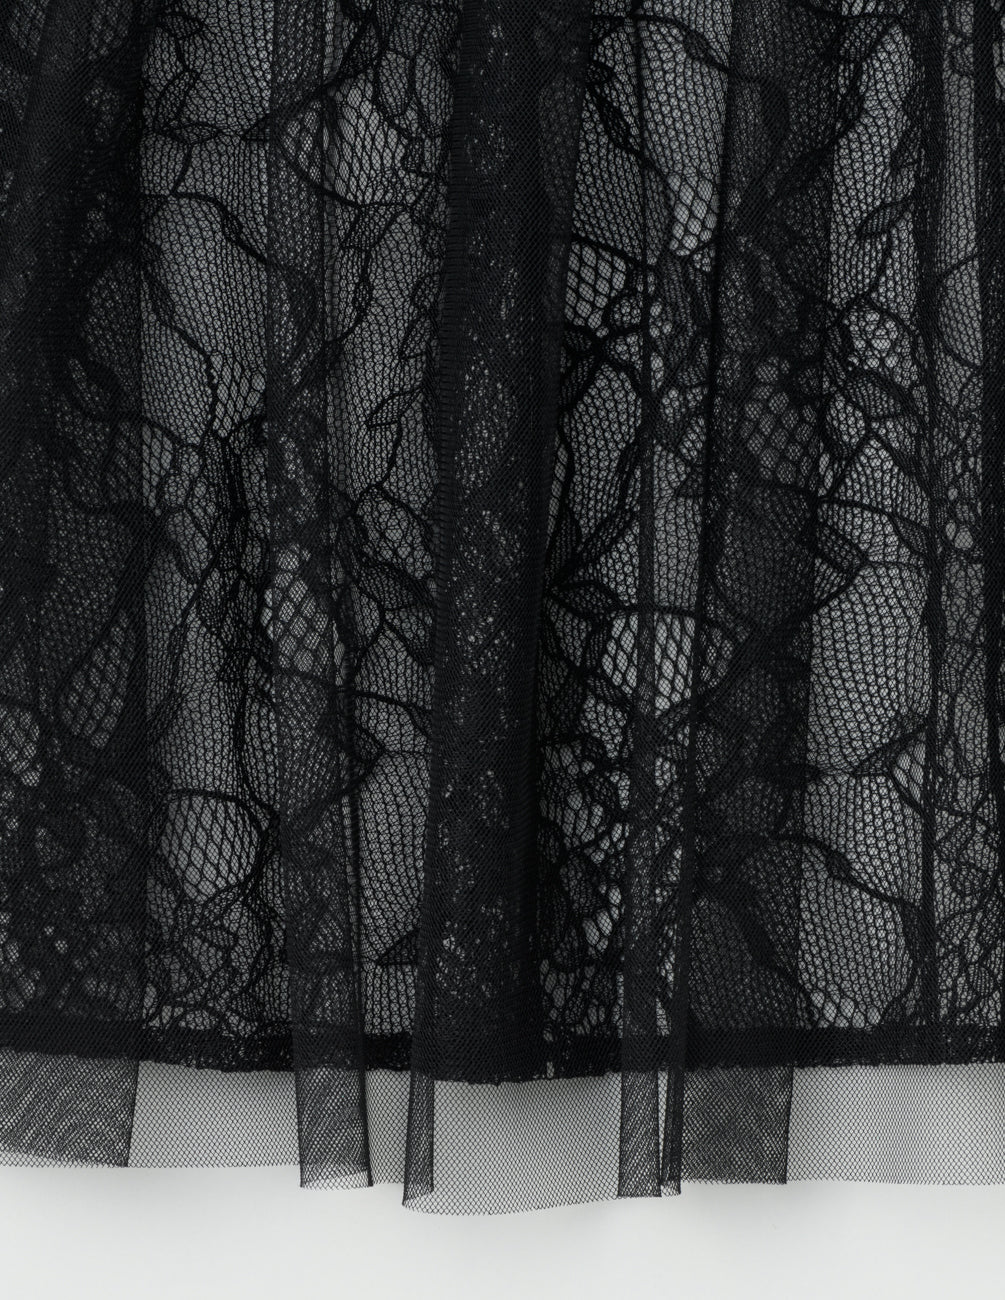 MARIHA(マリハ) 木漏れ陽のスカート Black シティードレスコレクション